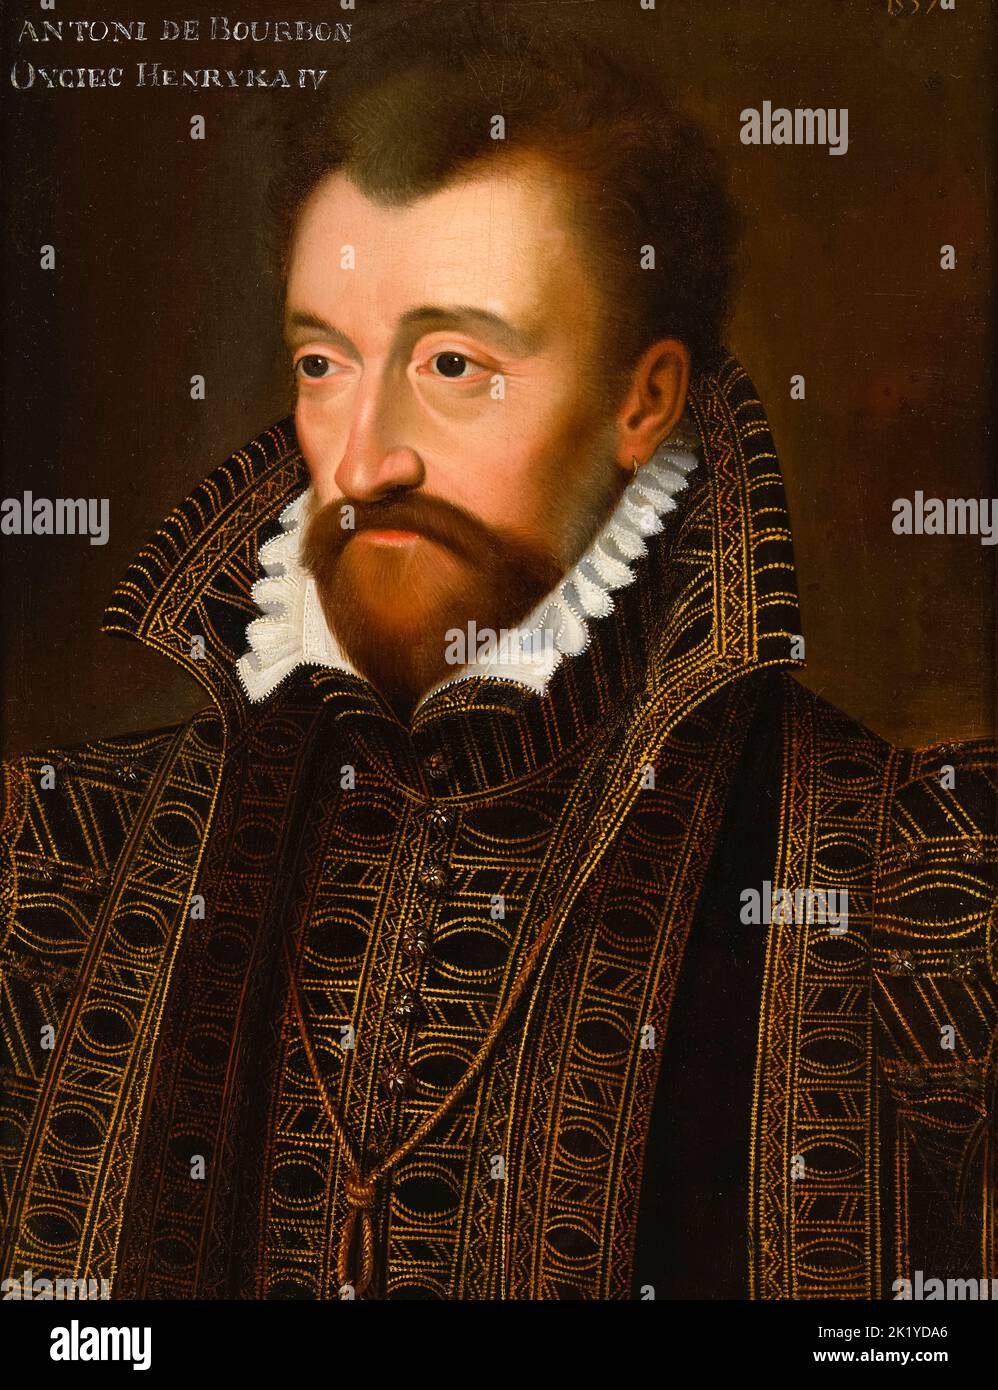 Antonius von Bourbon (Antoine de Bourbon) (1518-1562), König von Navarra (1555-1562), Vater von Heinrich IV., König von Frankreich (1589-1610), Ölporträt nach Francois Clouet(?), nach 1557 Stockfoto